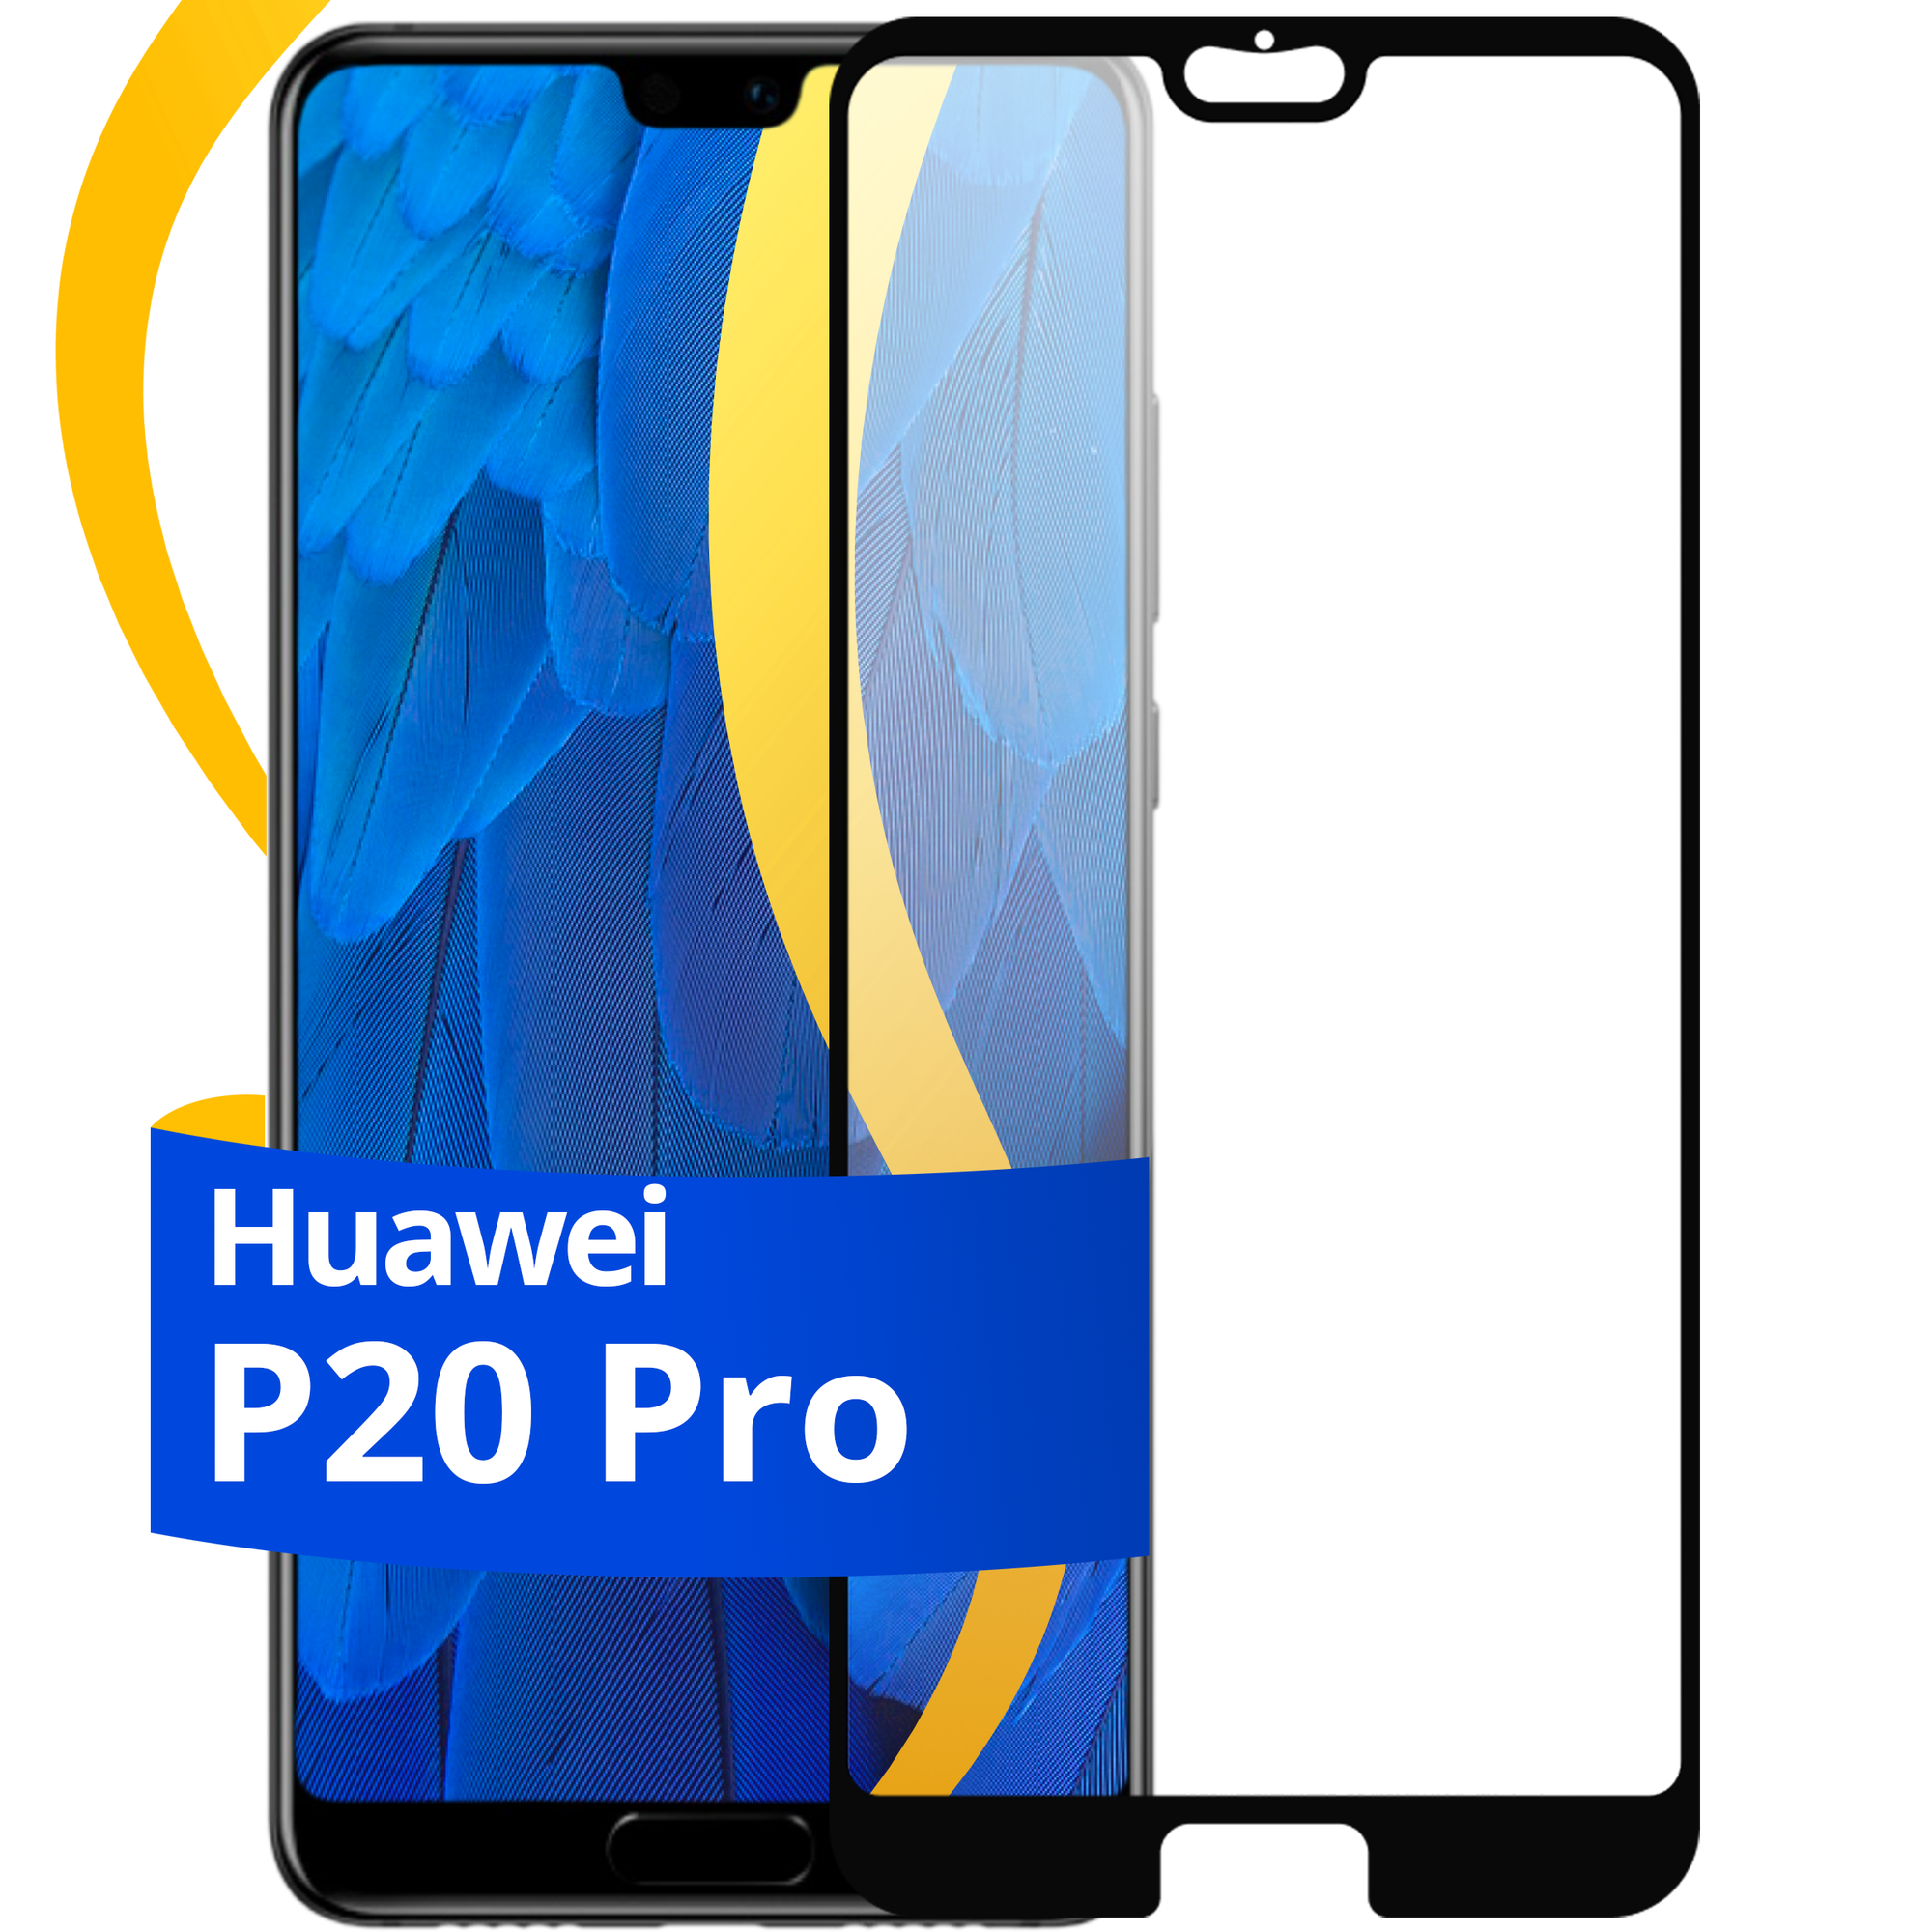 Глянцевое защитное стекло для телефона Huawei P20 Pro / Противоударное стекло с олеофобным покрытием на смартфон Хуавей П20 Про